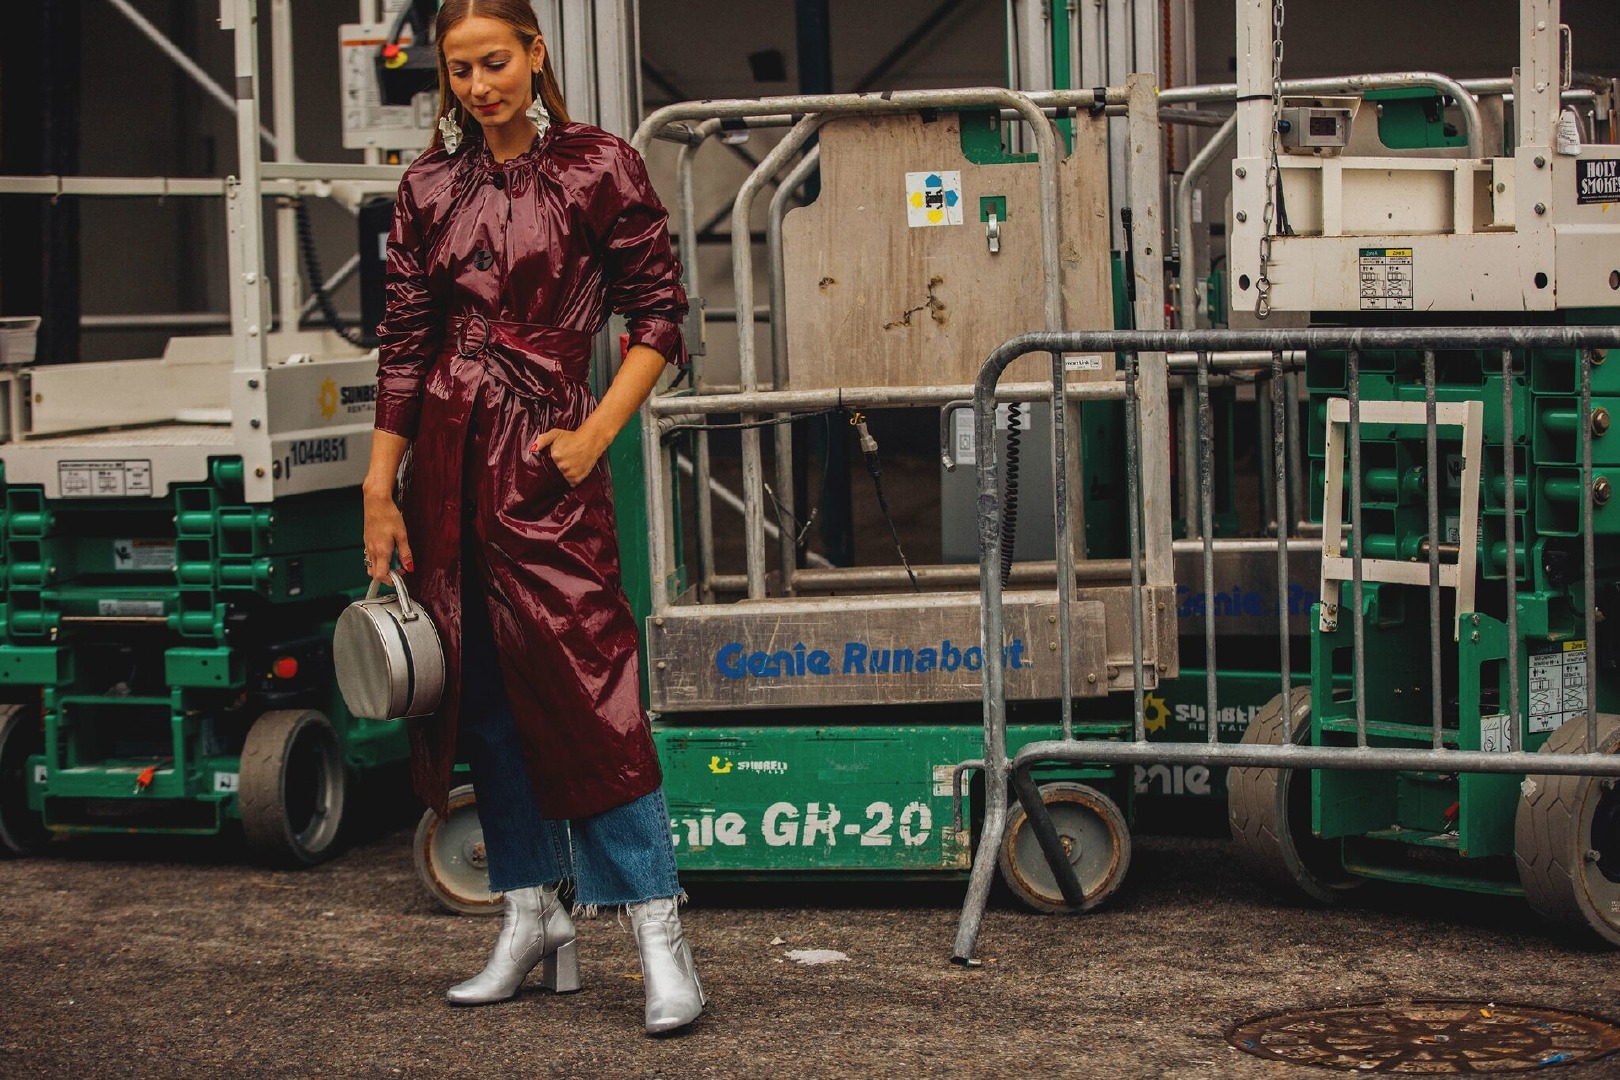 Sokak Stili: 2018 Sonbahar New York Moda Haftası